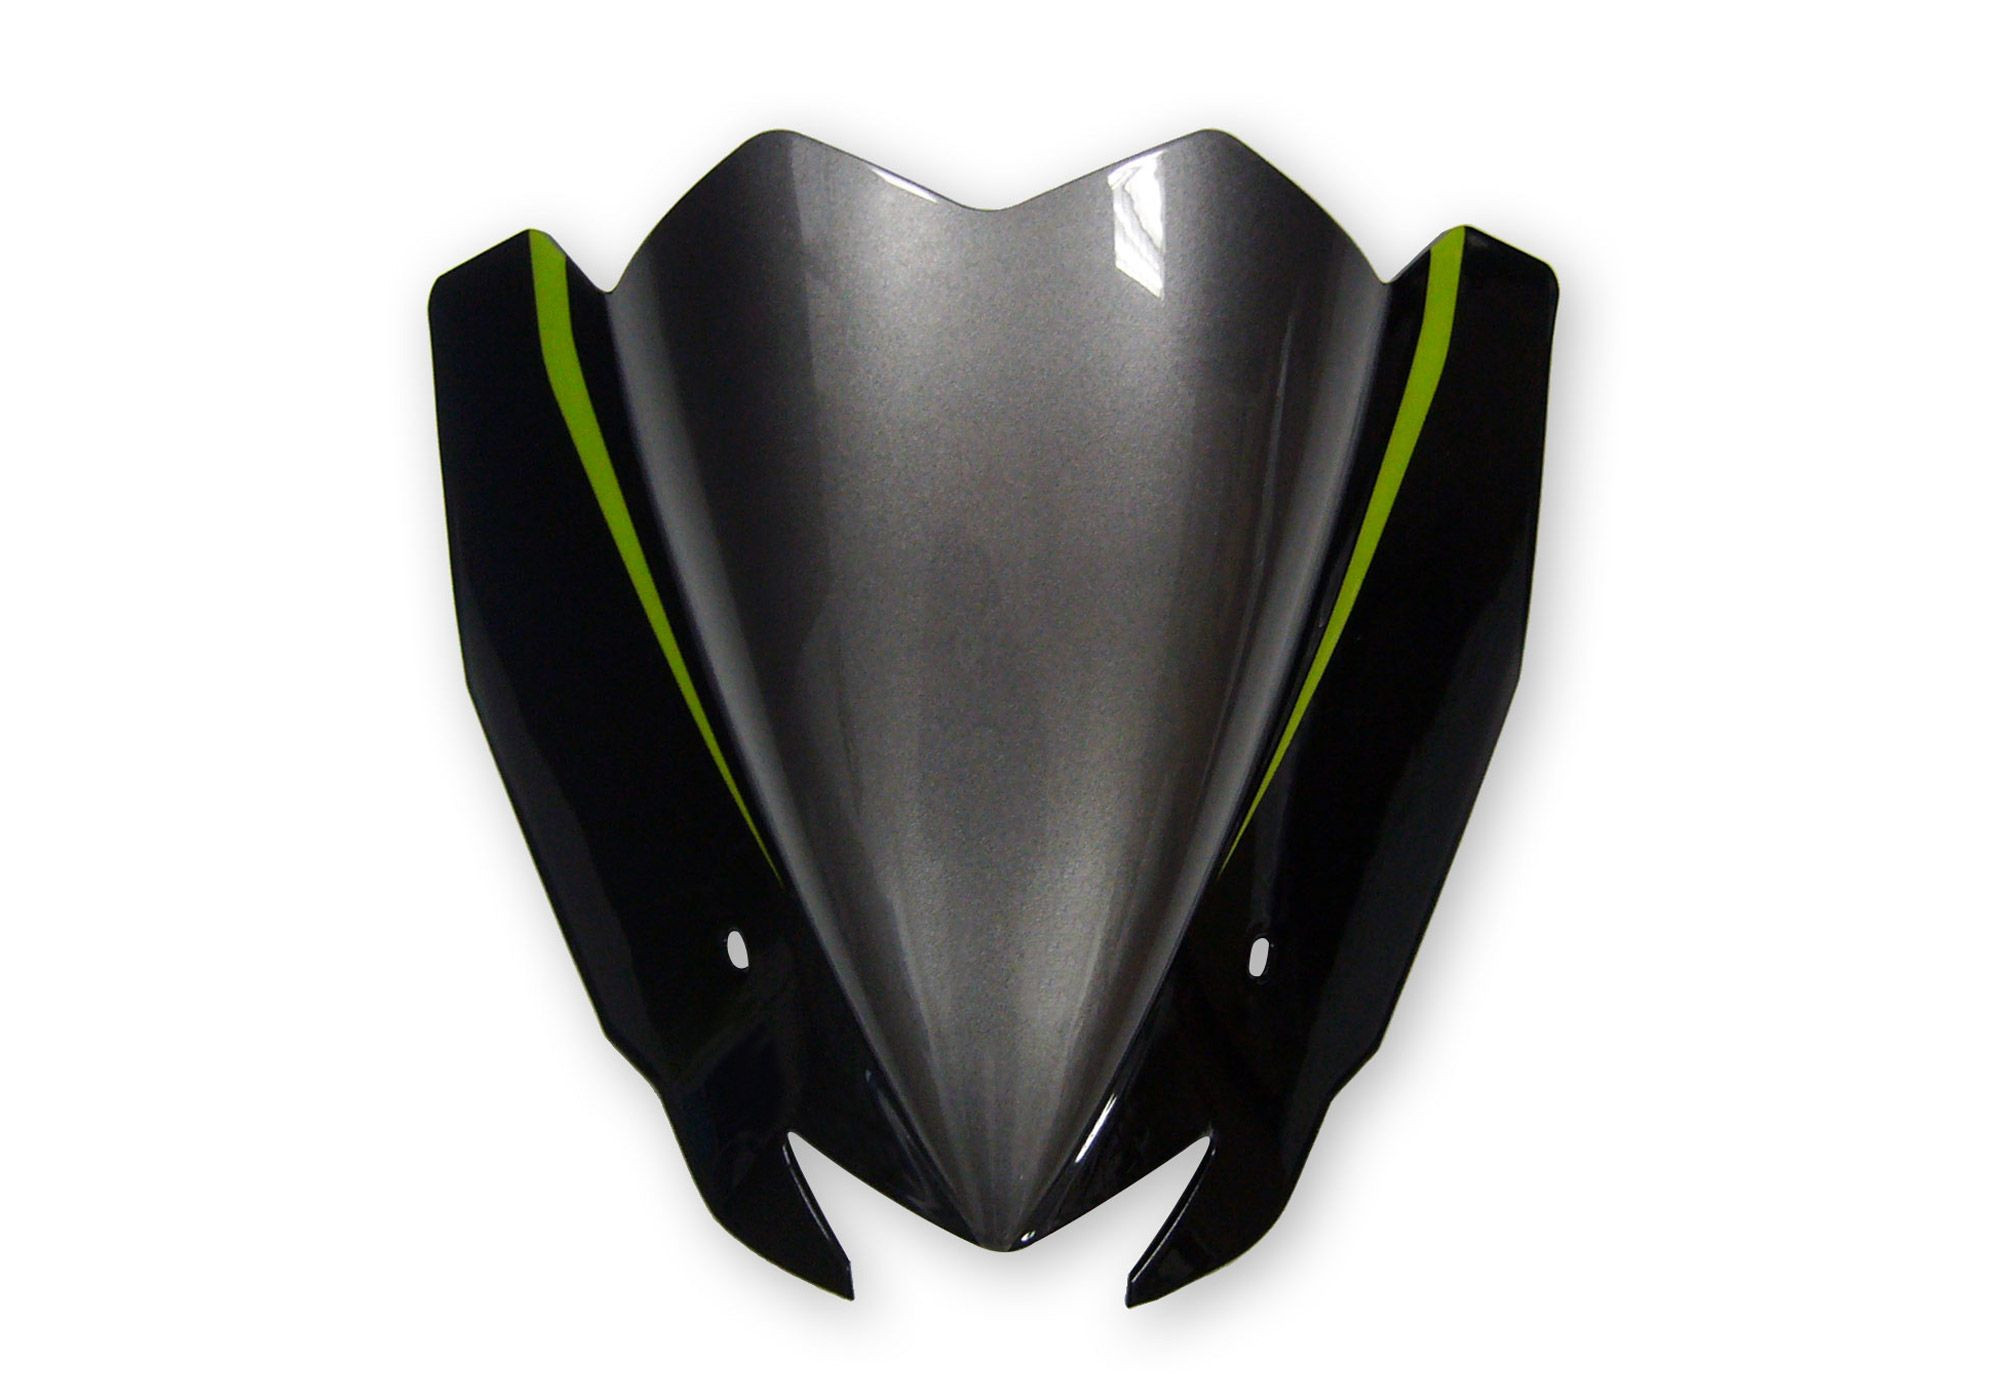 V*BODYSTYLE Sportsline Scheinwerferverkleidung schwarz/grün Metallic Spark Black, 660/Golden Blaze passt für Kawasaki Z1000